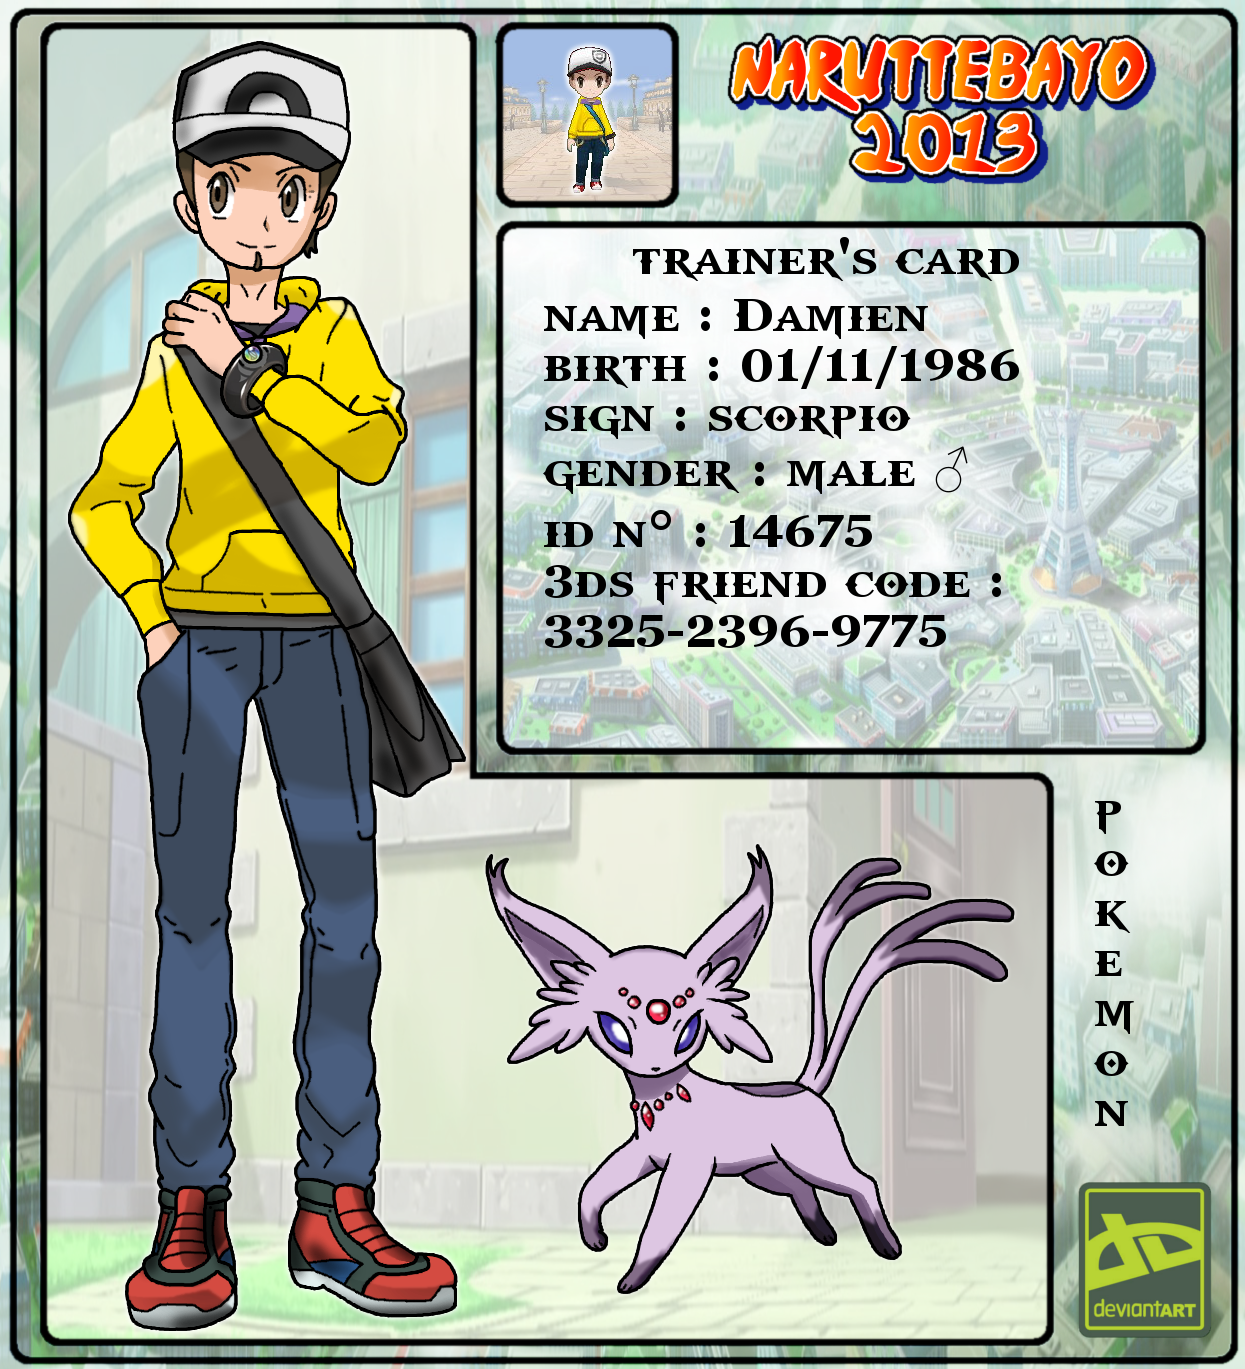 Deviantart Pokemon Trainer Id Card 2013 By Naruttebayo67 On DeviantArt.